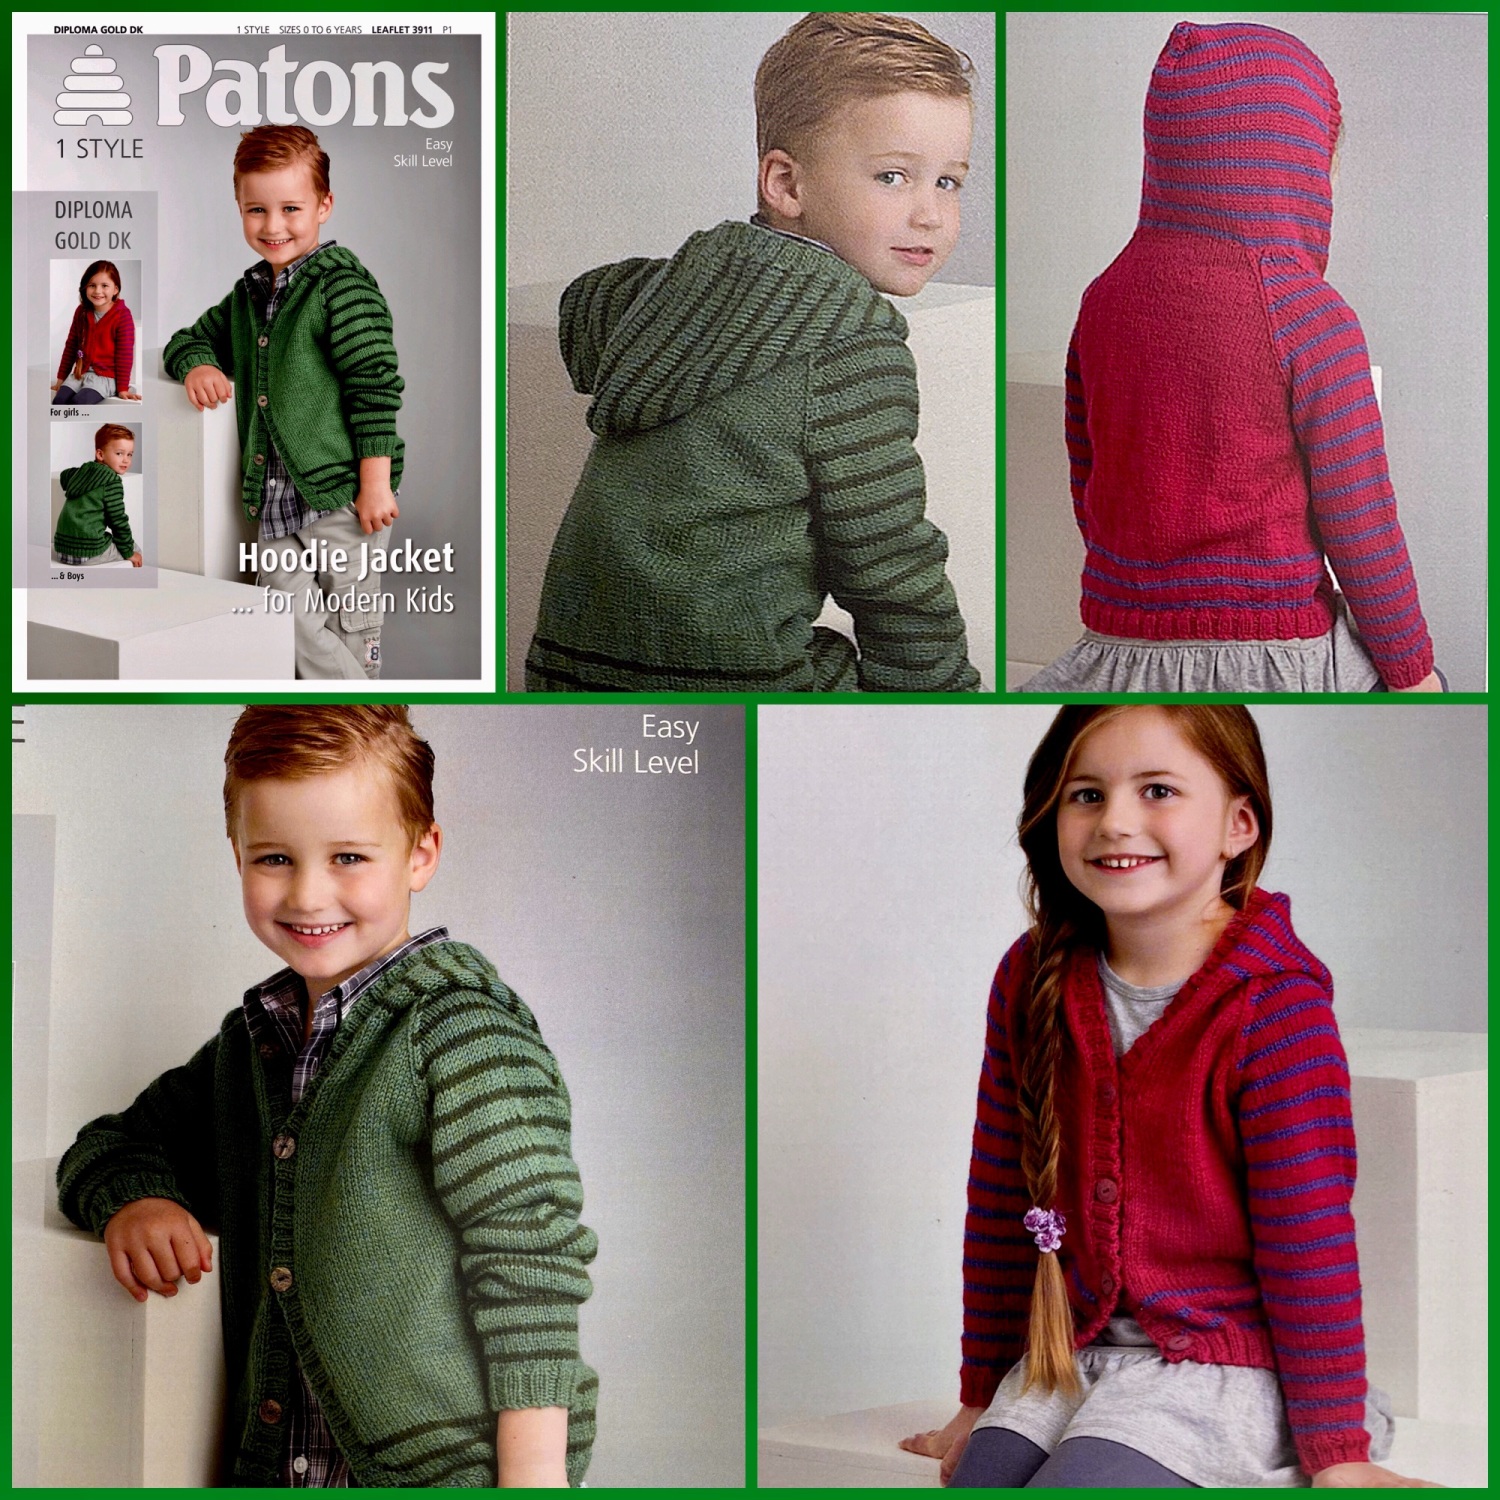 Patons Hoodie Jacket PBN 3911 Leaflet | Knitting Patterns | KnitUK